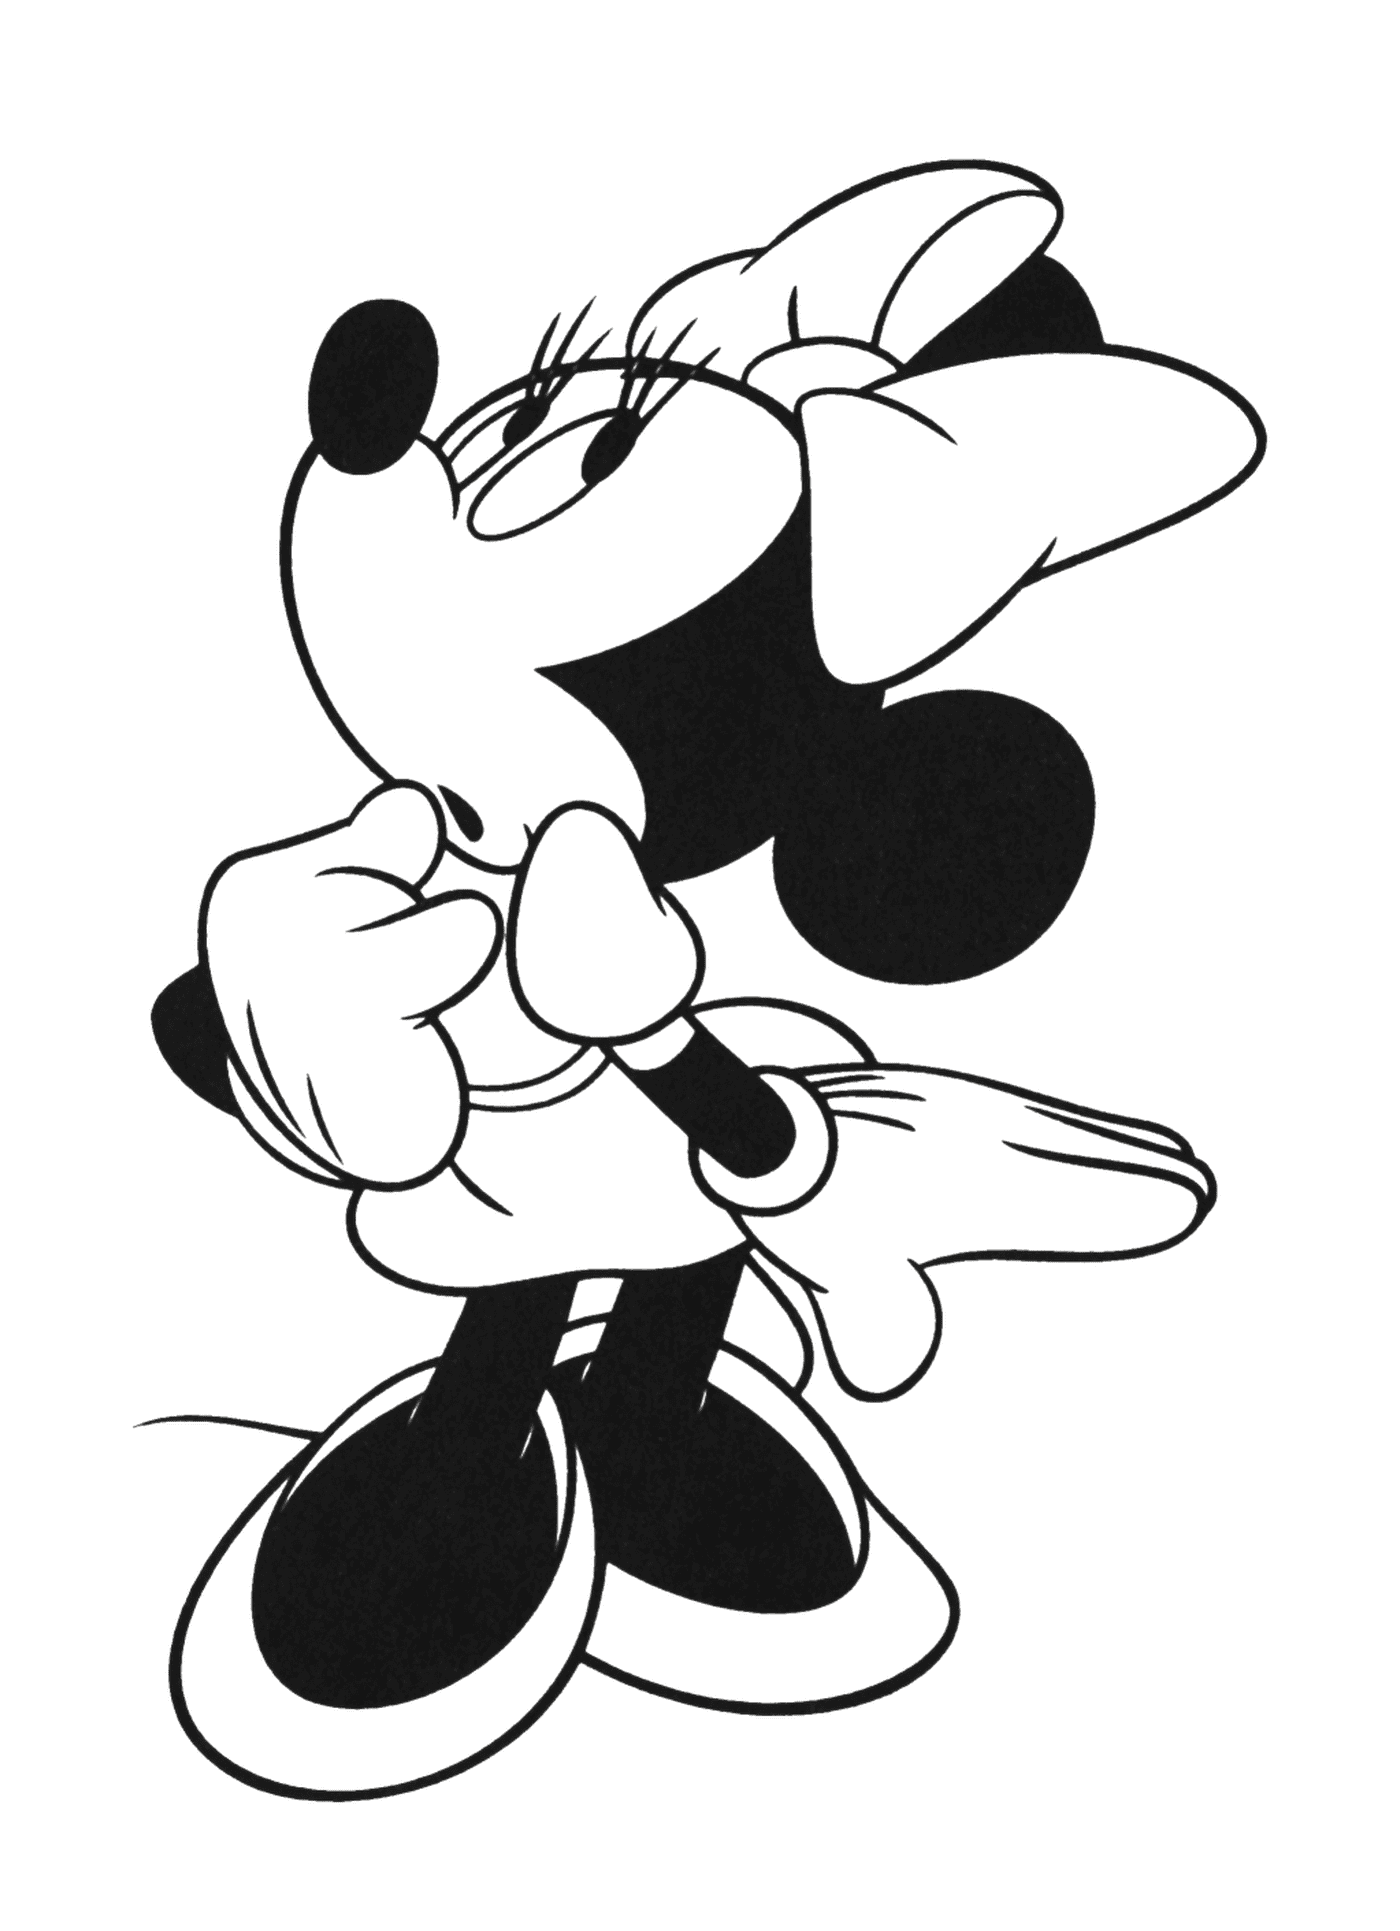   Mickey Mouse, le compagnon de Minnie depuis 1928 